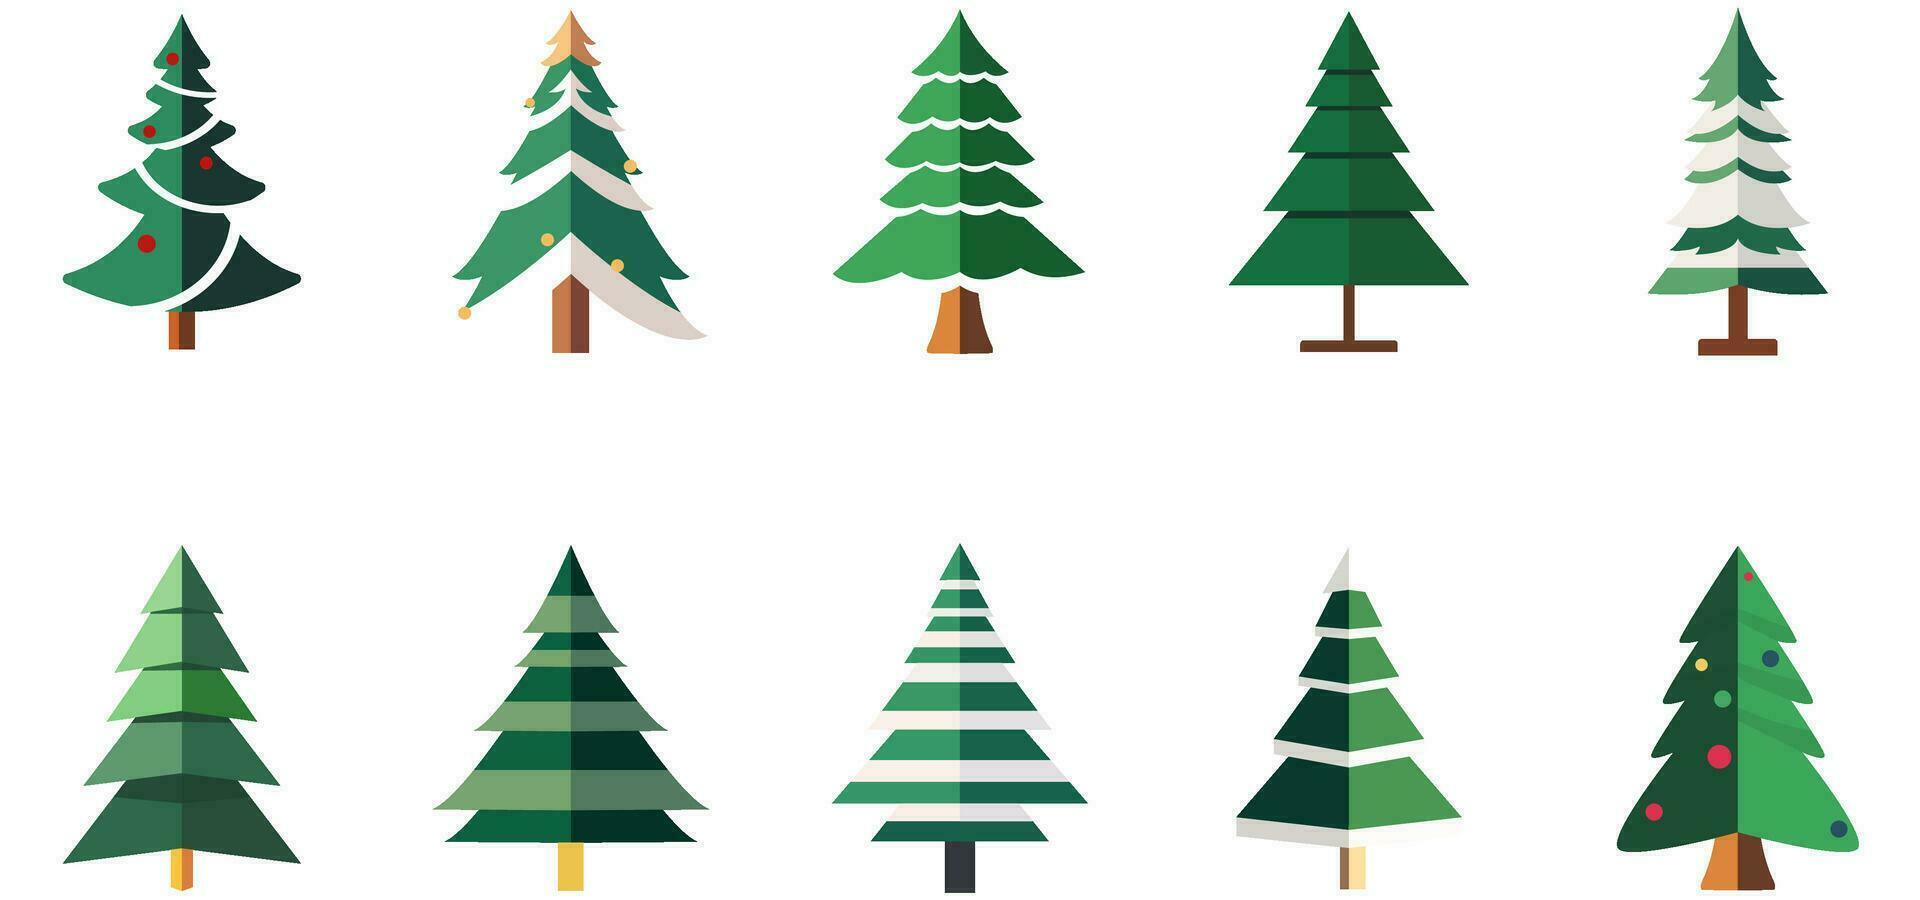 Weihnachten Baum einstellen von Dekorationen Element zum Weihnachten Urlaub Banner, Poster vektor